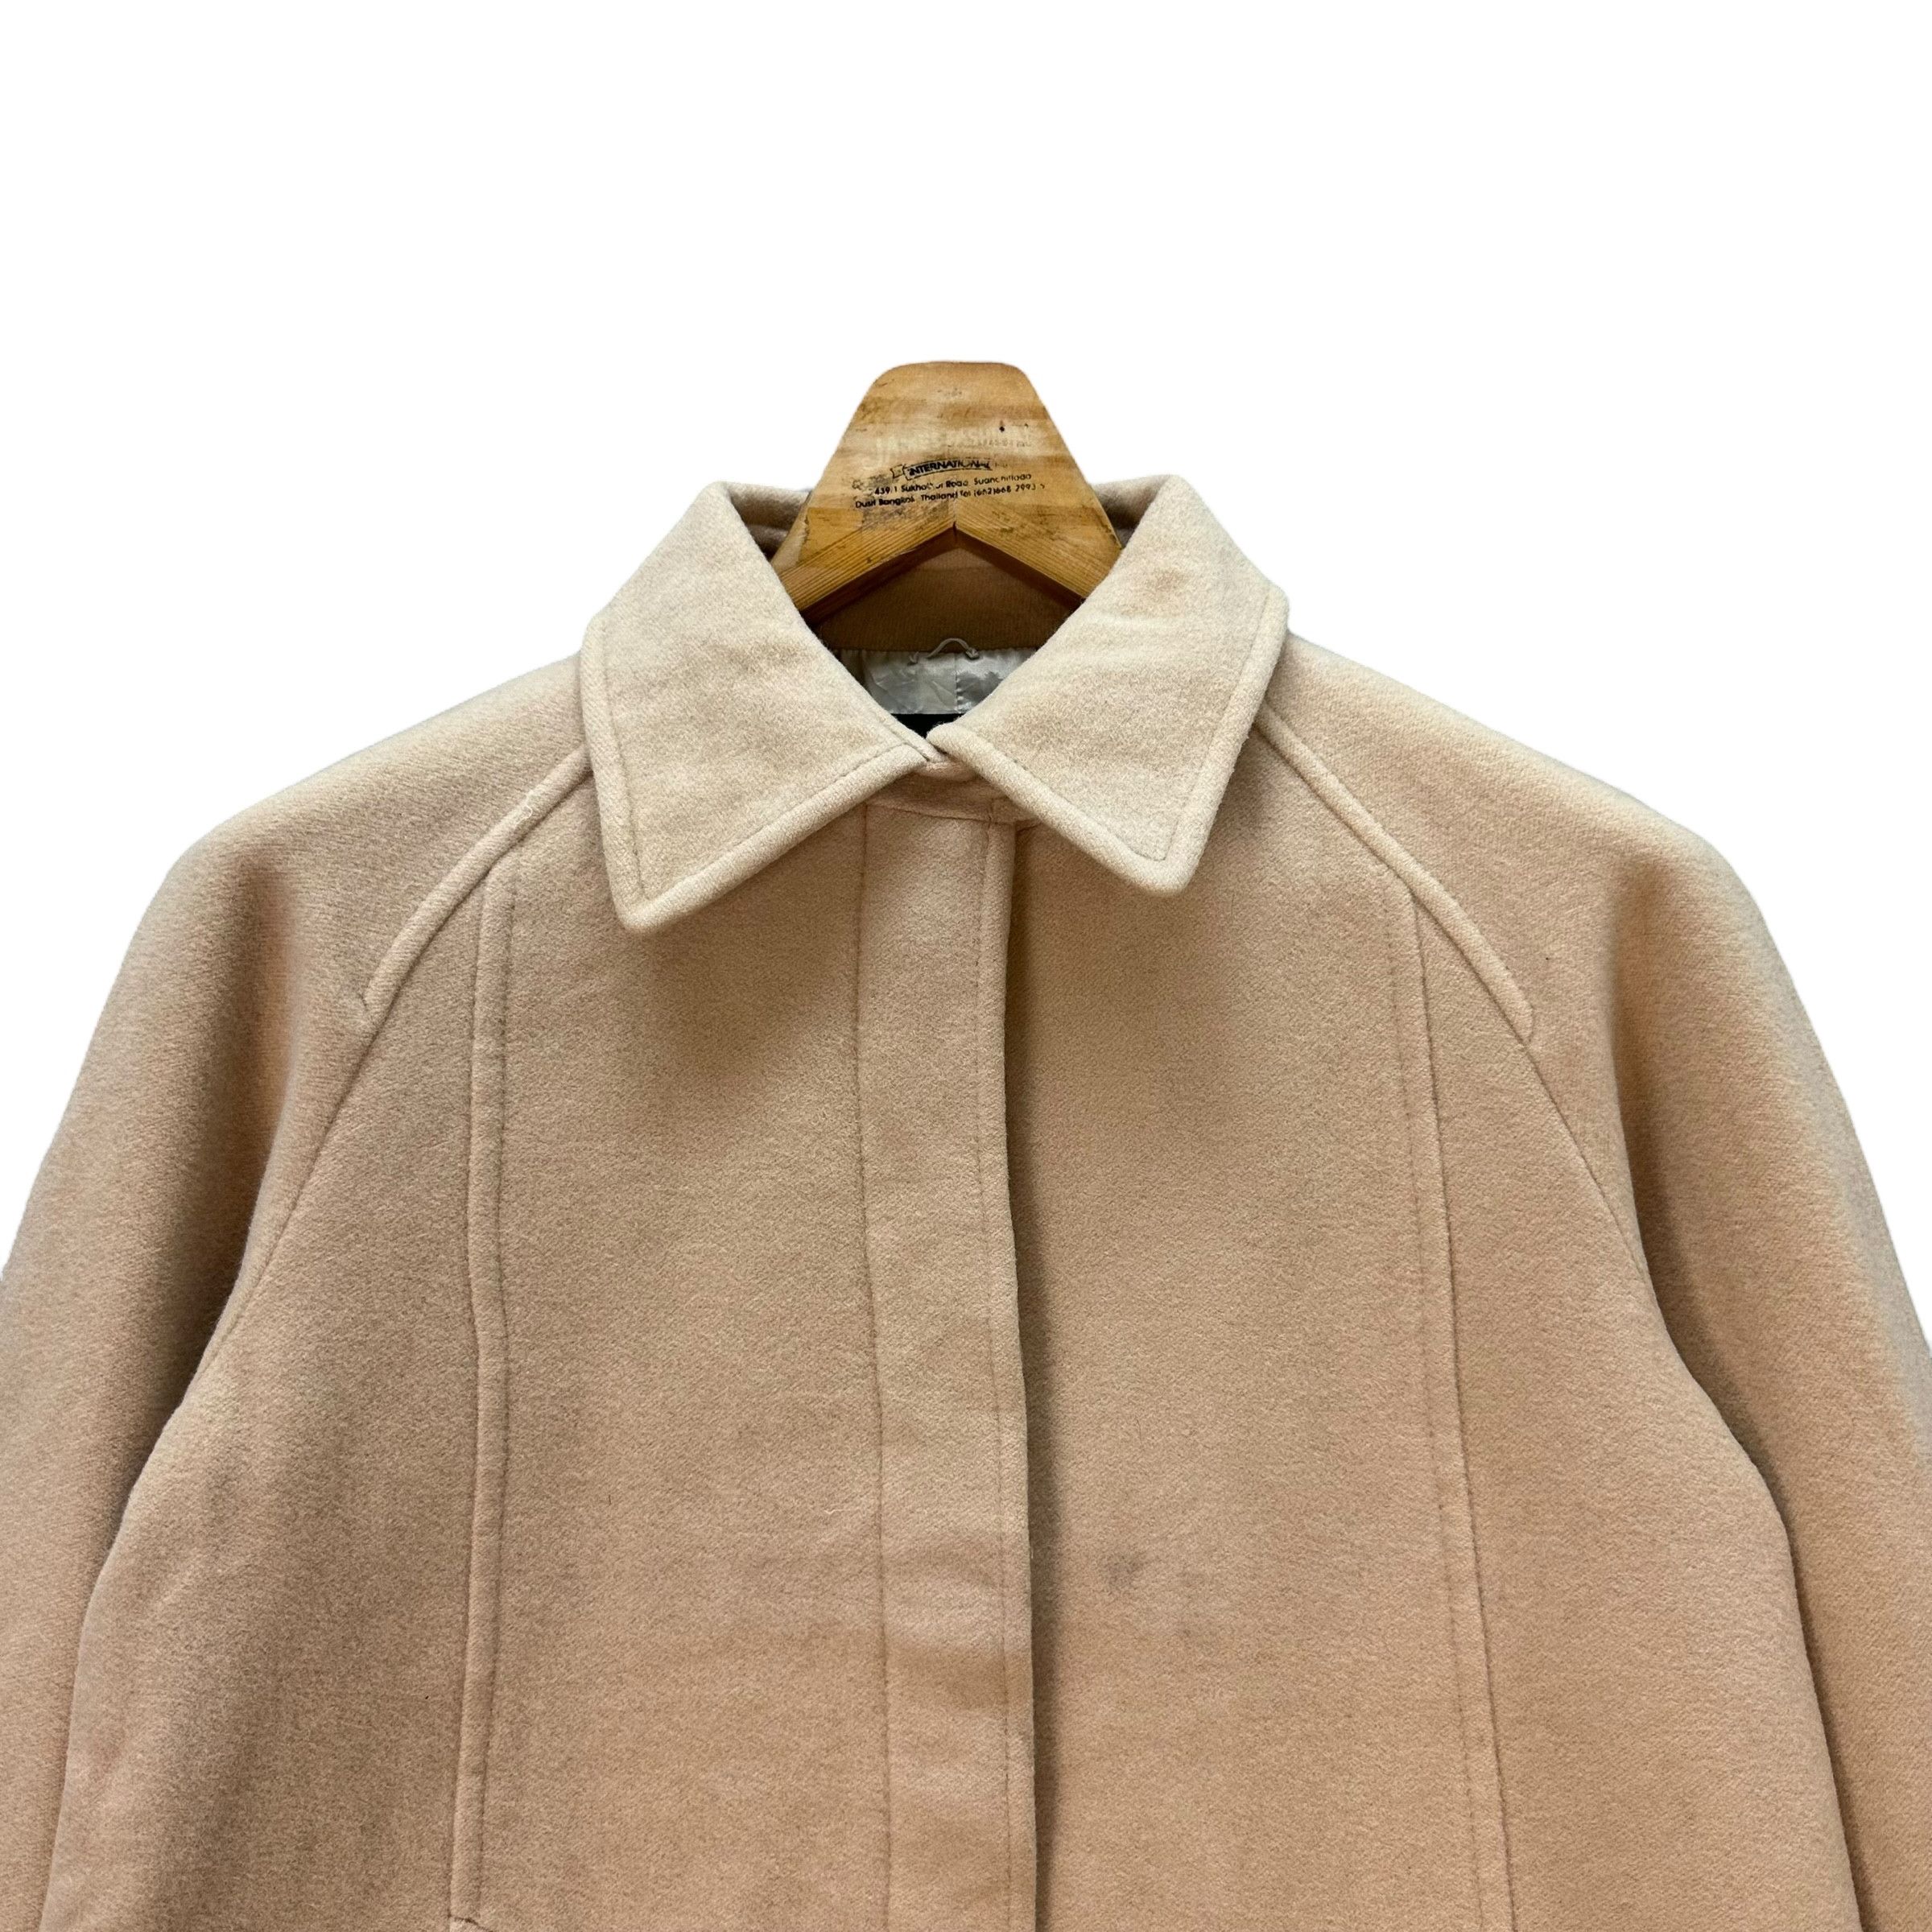 Vintage - Sonia Rykiel Wool Blend Coat Jacket #9117-58 - 2